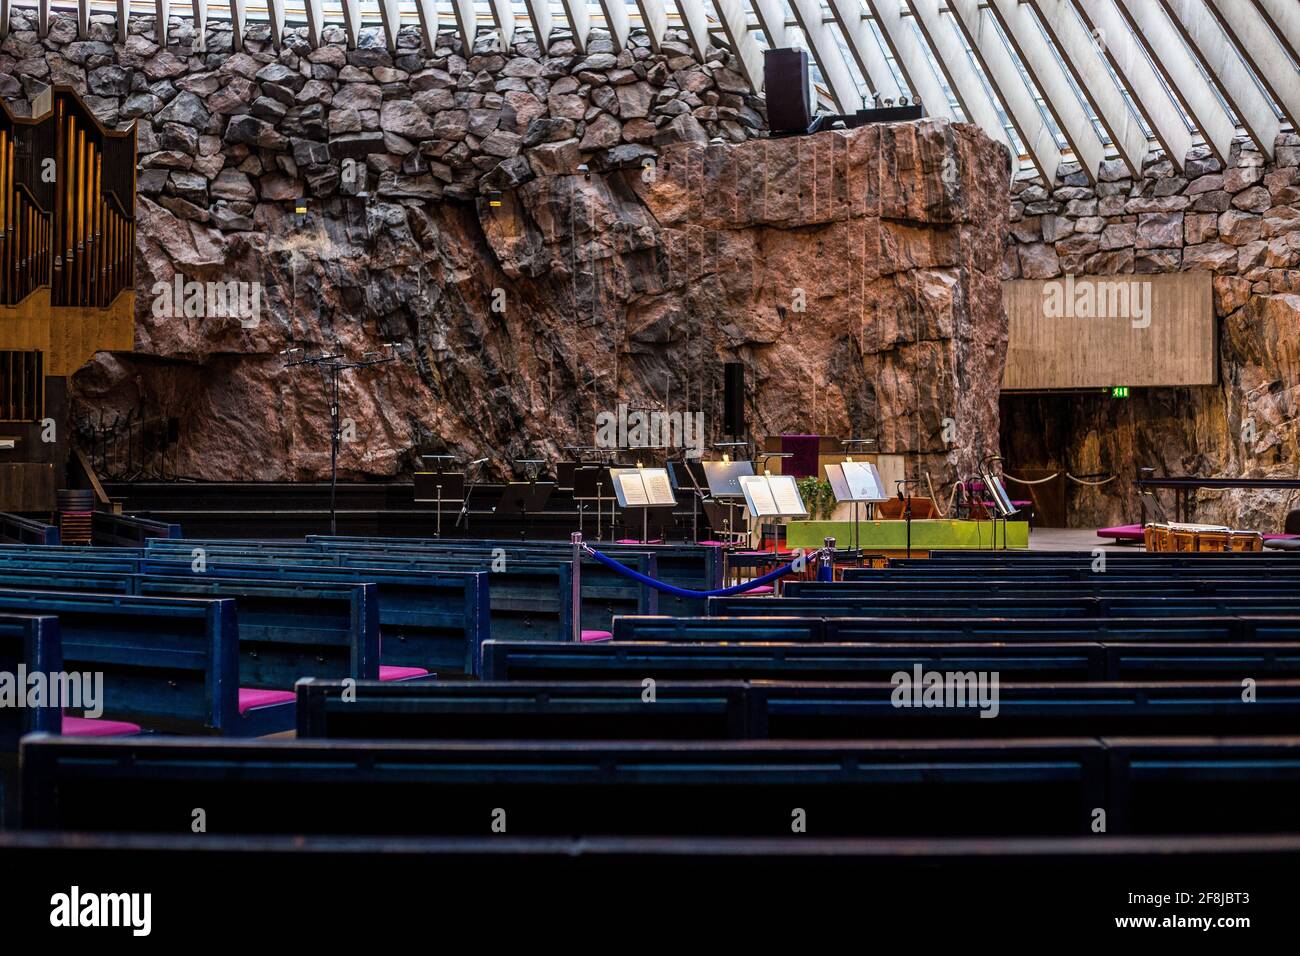 Helsinki, Finlandia - 10 marzo 2017: Interno della Chiesa di Temppeliaukio (Chiesa della roccia) con Sezione Orchestra in background Foto Stock